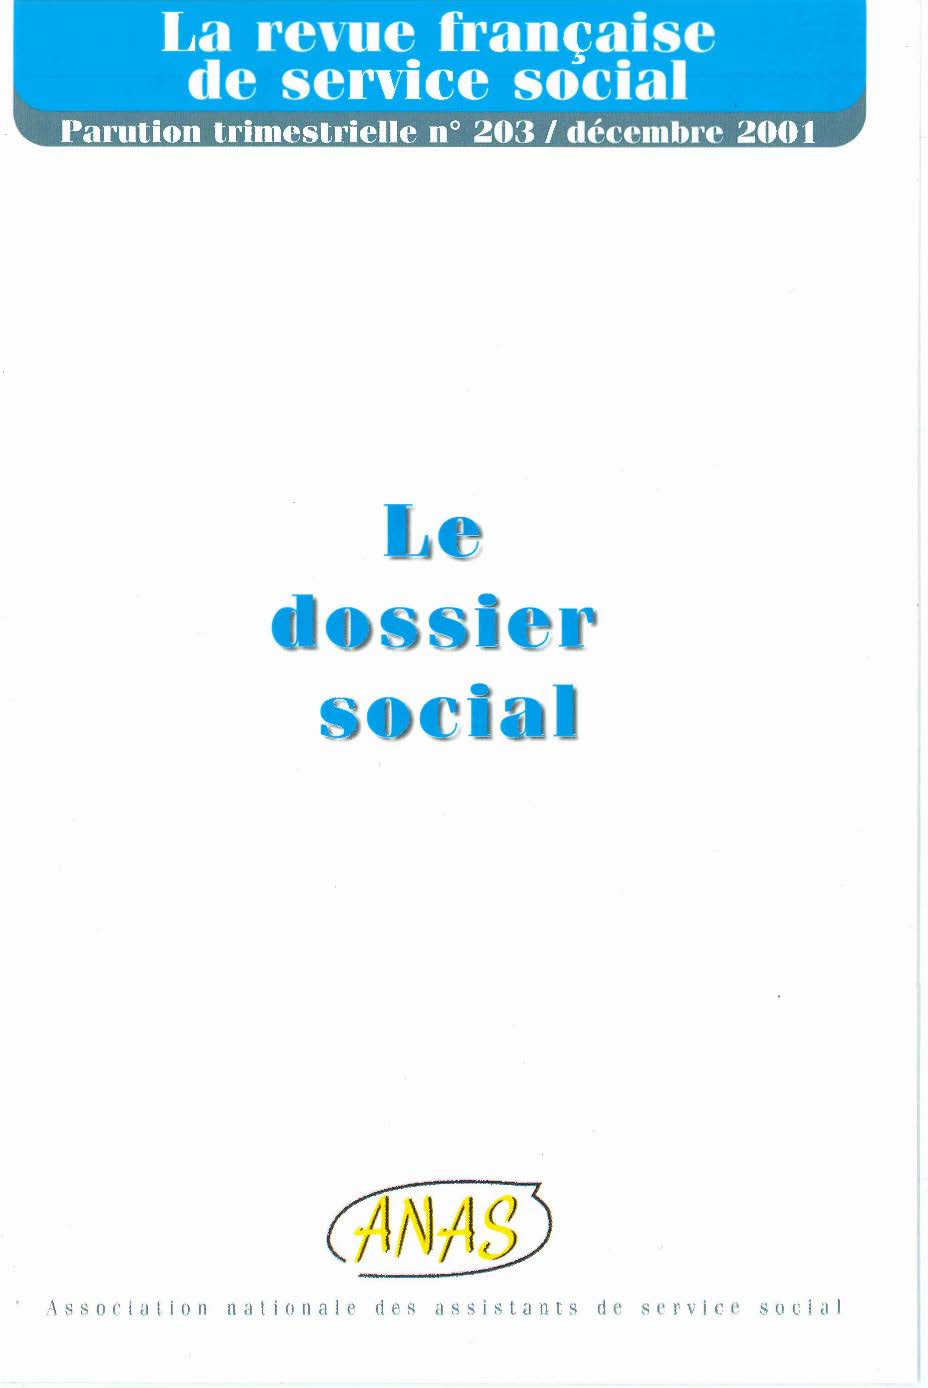 Télécharger la Revue Française de Service Social N°203 : "Le dossier social"